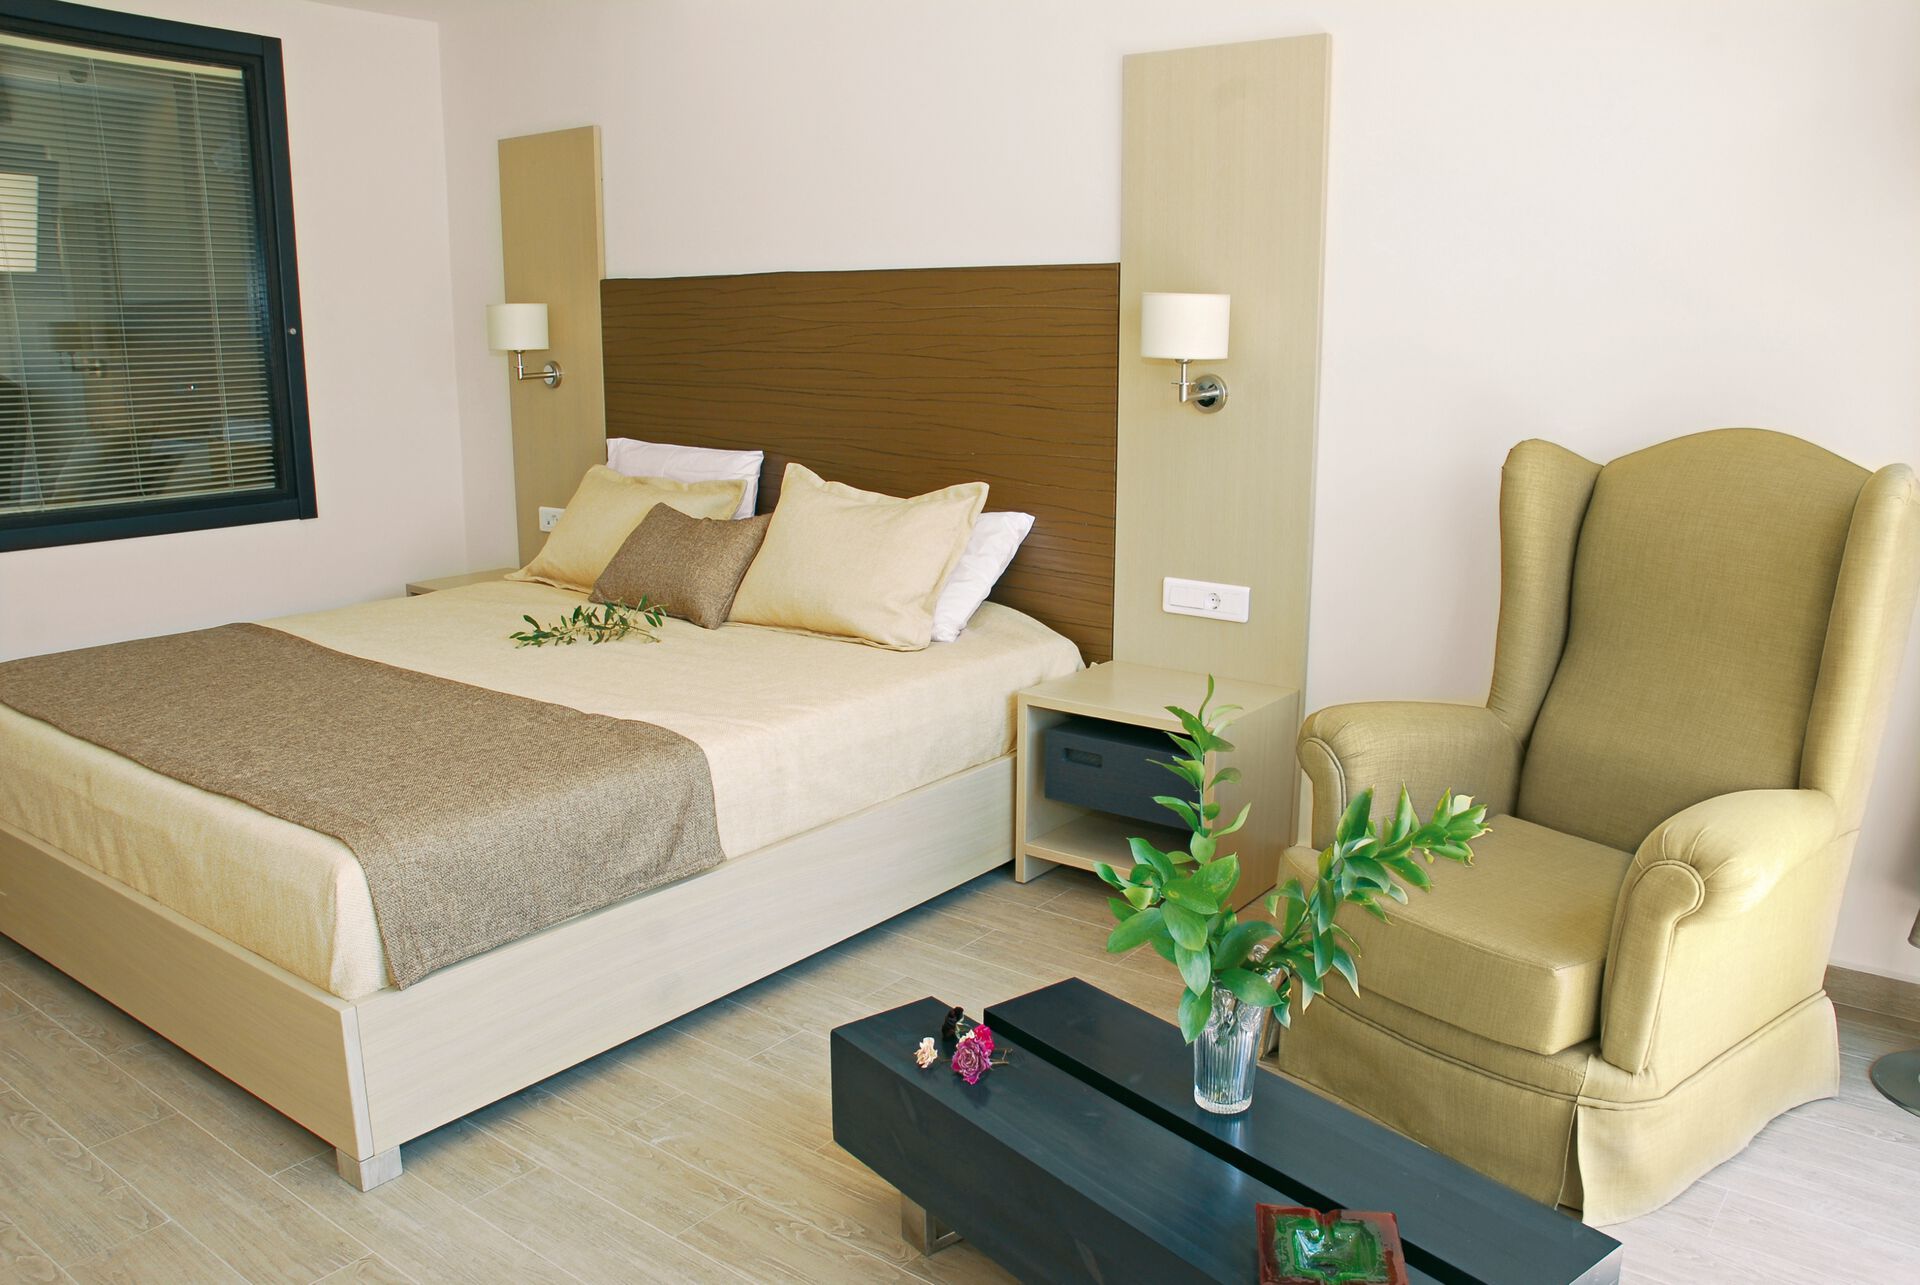 Crète - Bali - Grèce - Iles grecques - Hotel Filion Suites Resort & Spa 5*